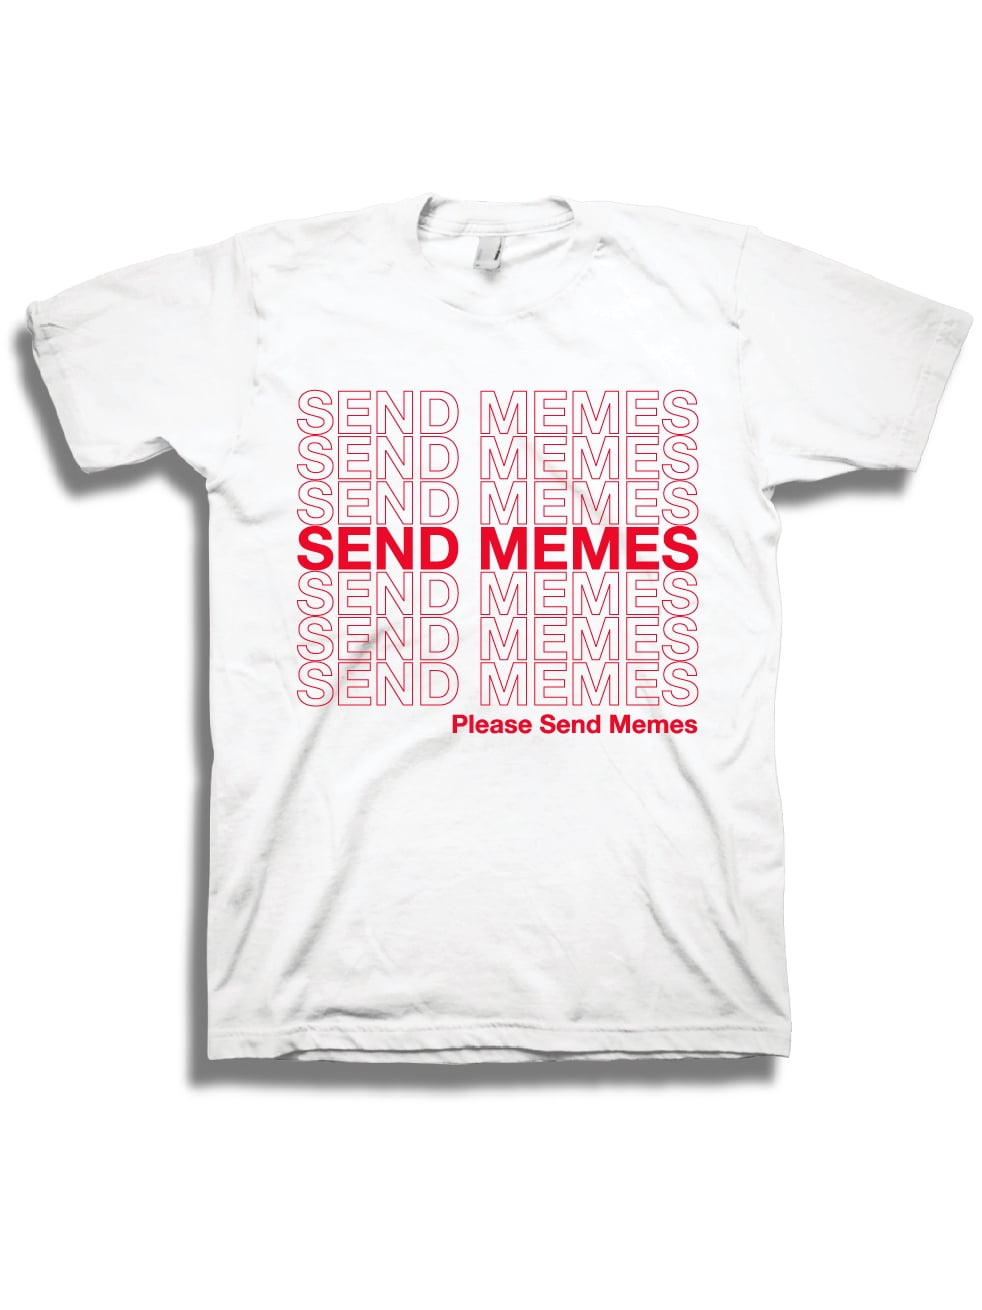 Pop Threads Workplace Office Humor Funny Merchandise TV Show Crewneck Sweatshirt for Men